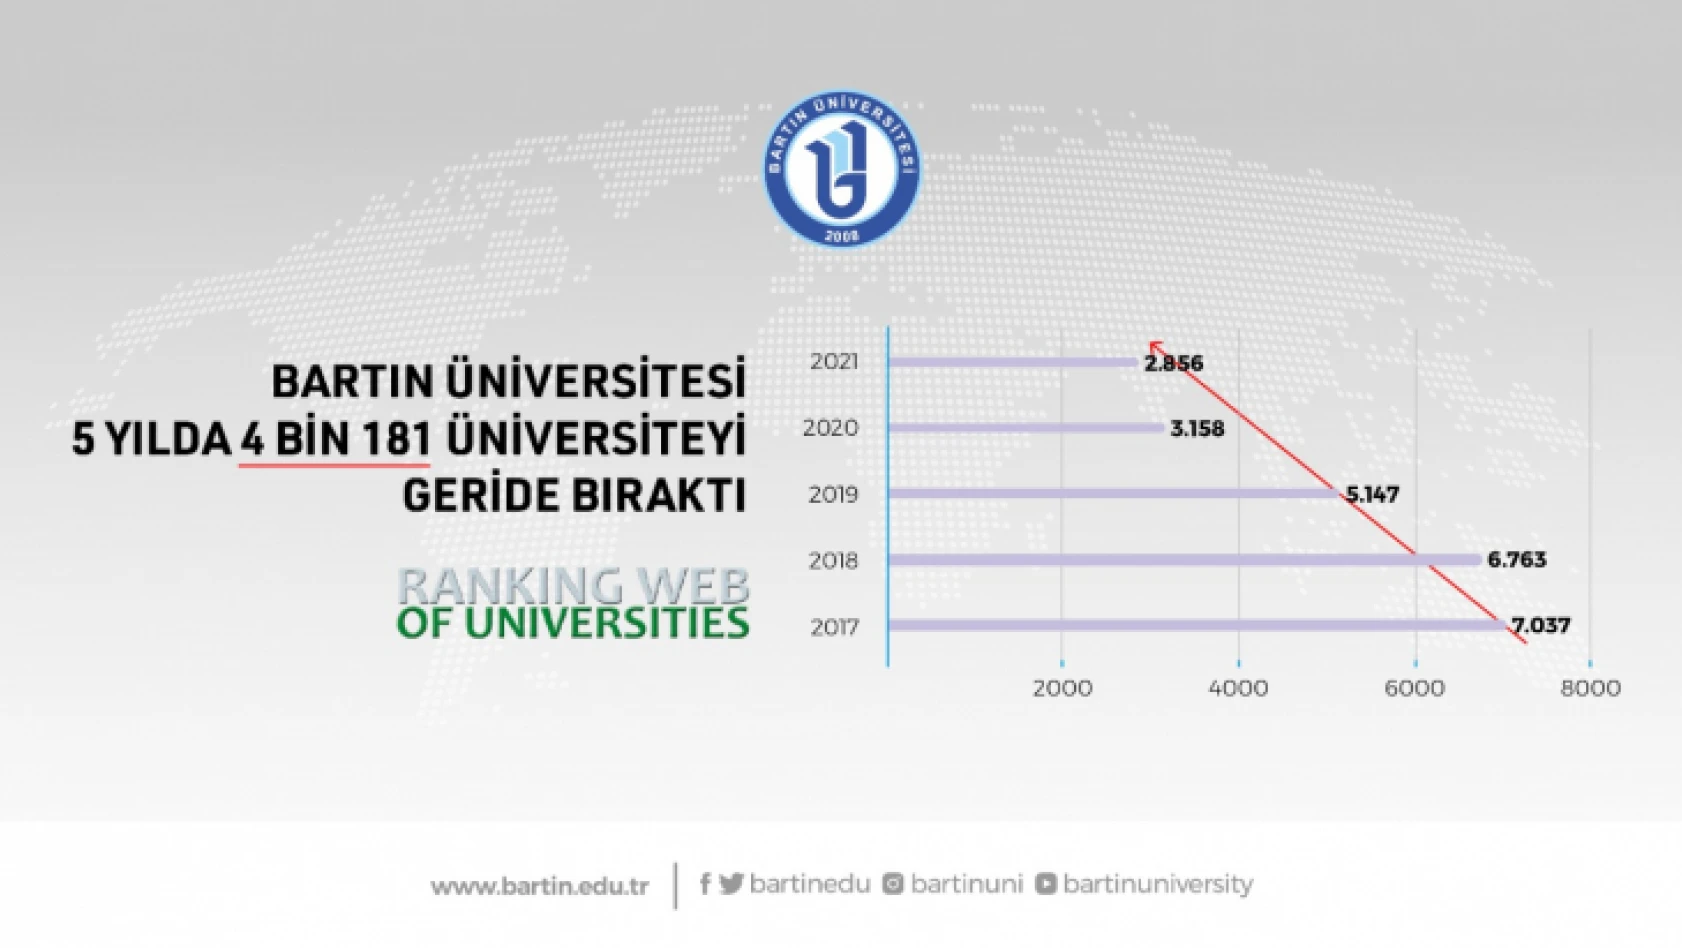 Bartın Üniversitesi 5 yılda 4 bin 181 üniversiteyi geride bıraktı